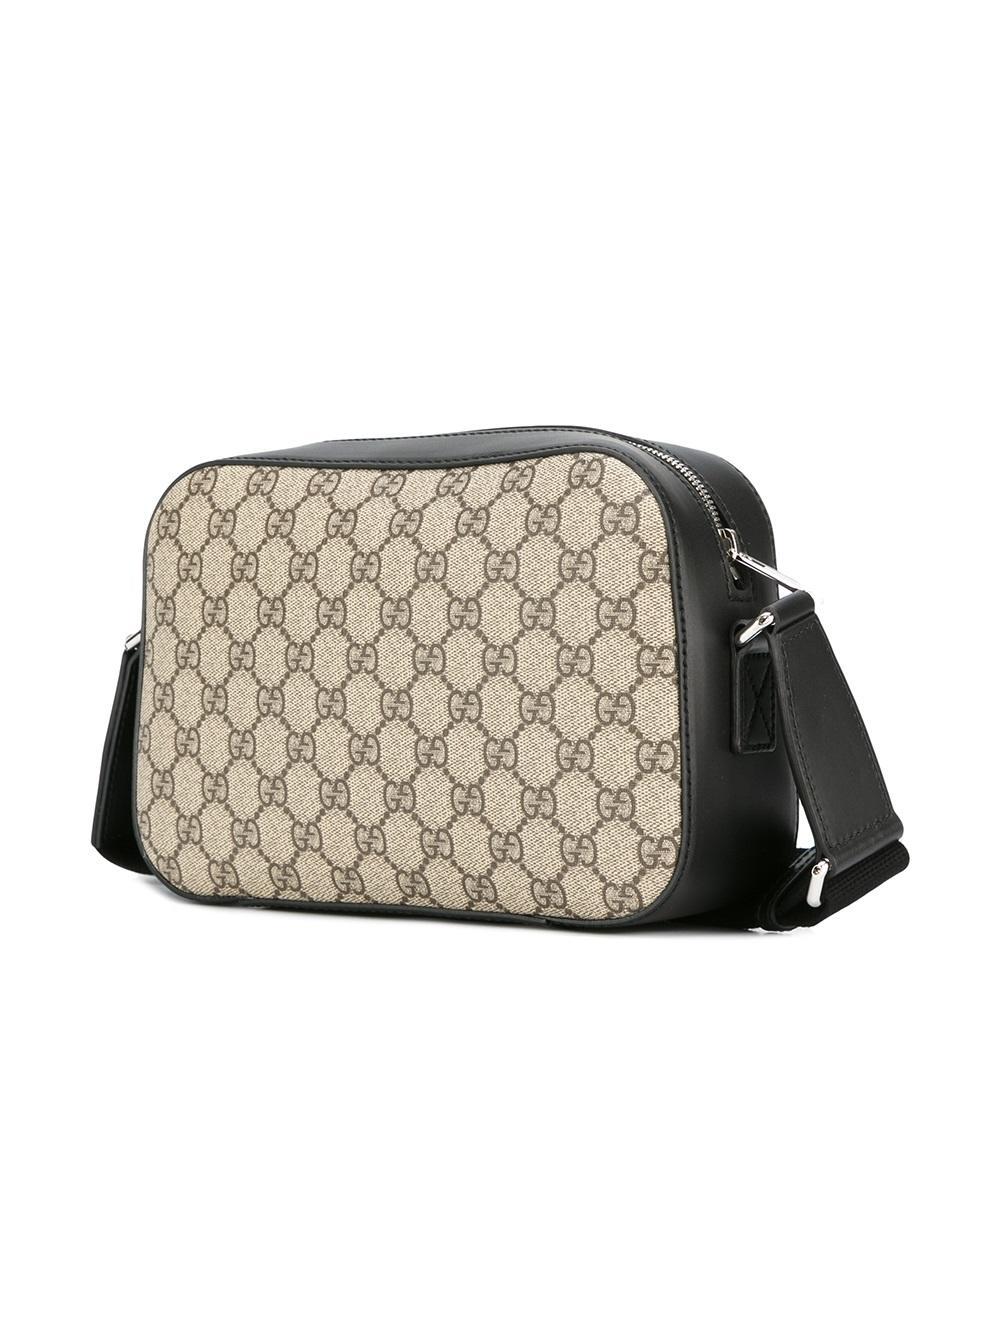 Gucci Leather Gg Supreme Shoulder Bag in Brown for Men - Lyst